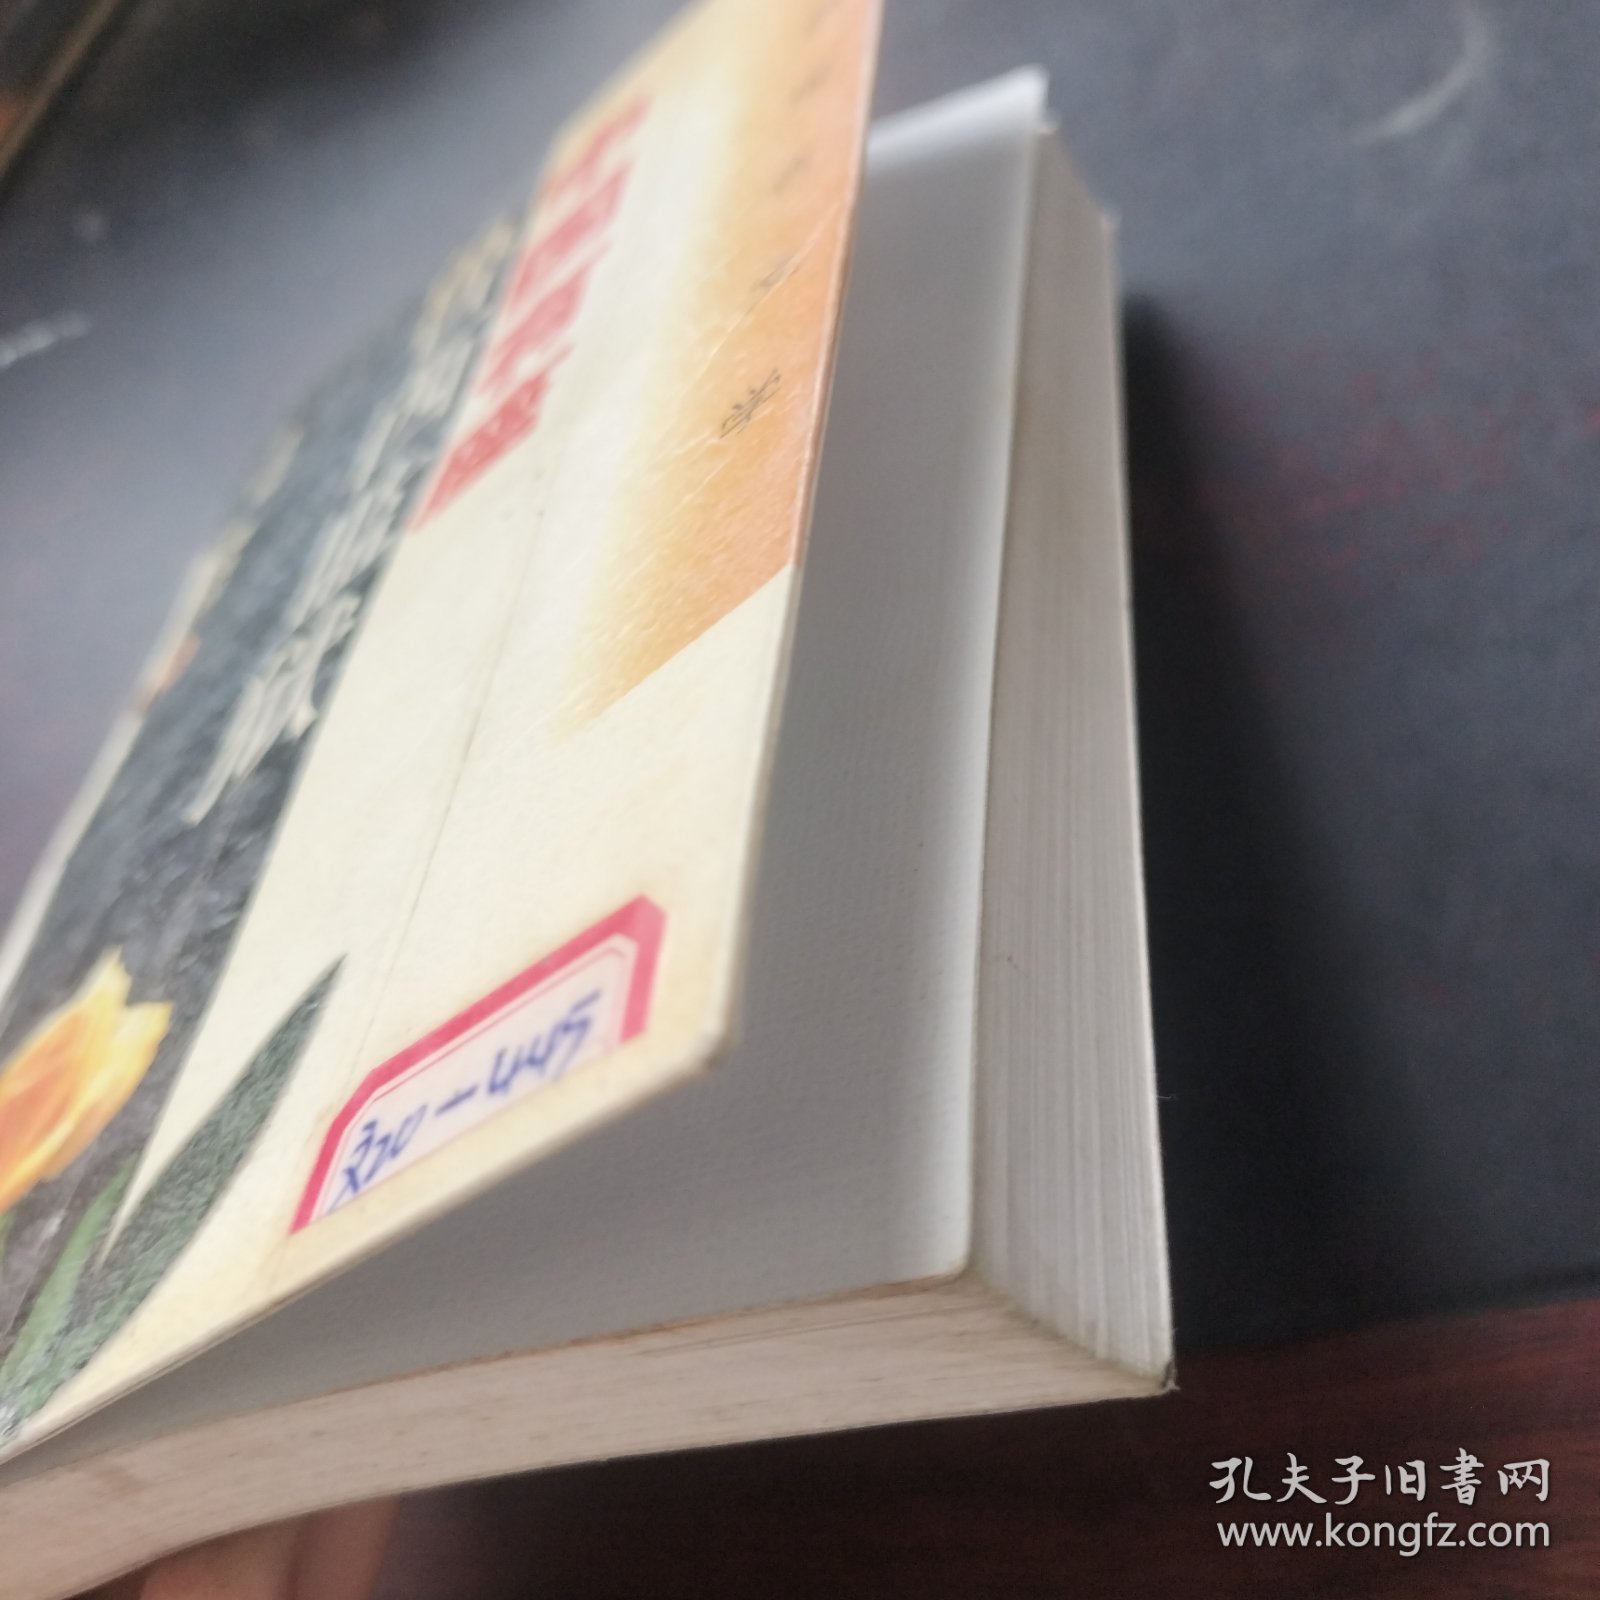 中国有座鲁西监狱: 长篇报告文学